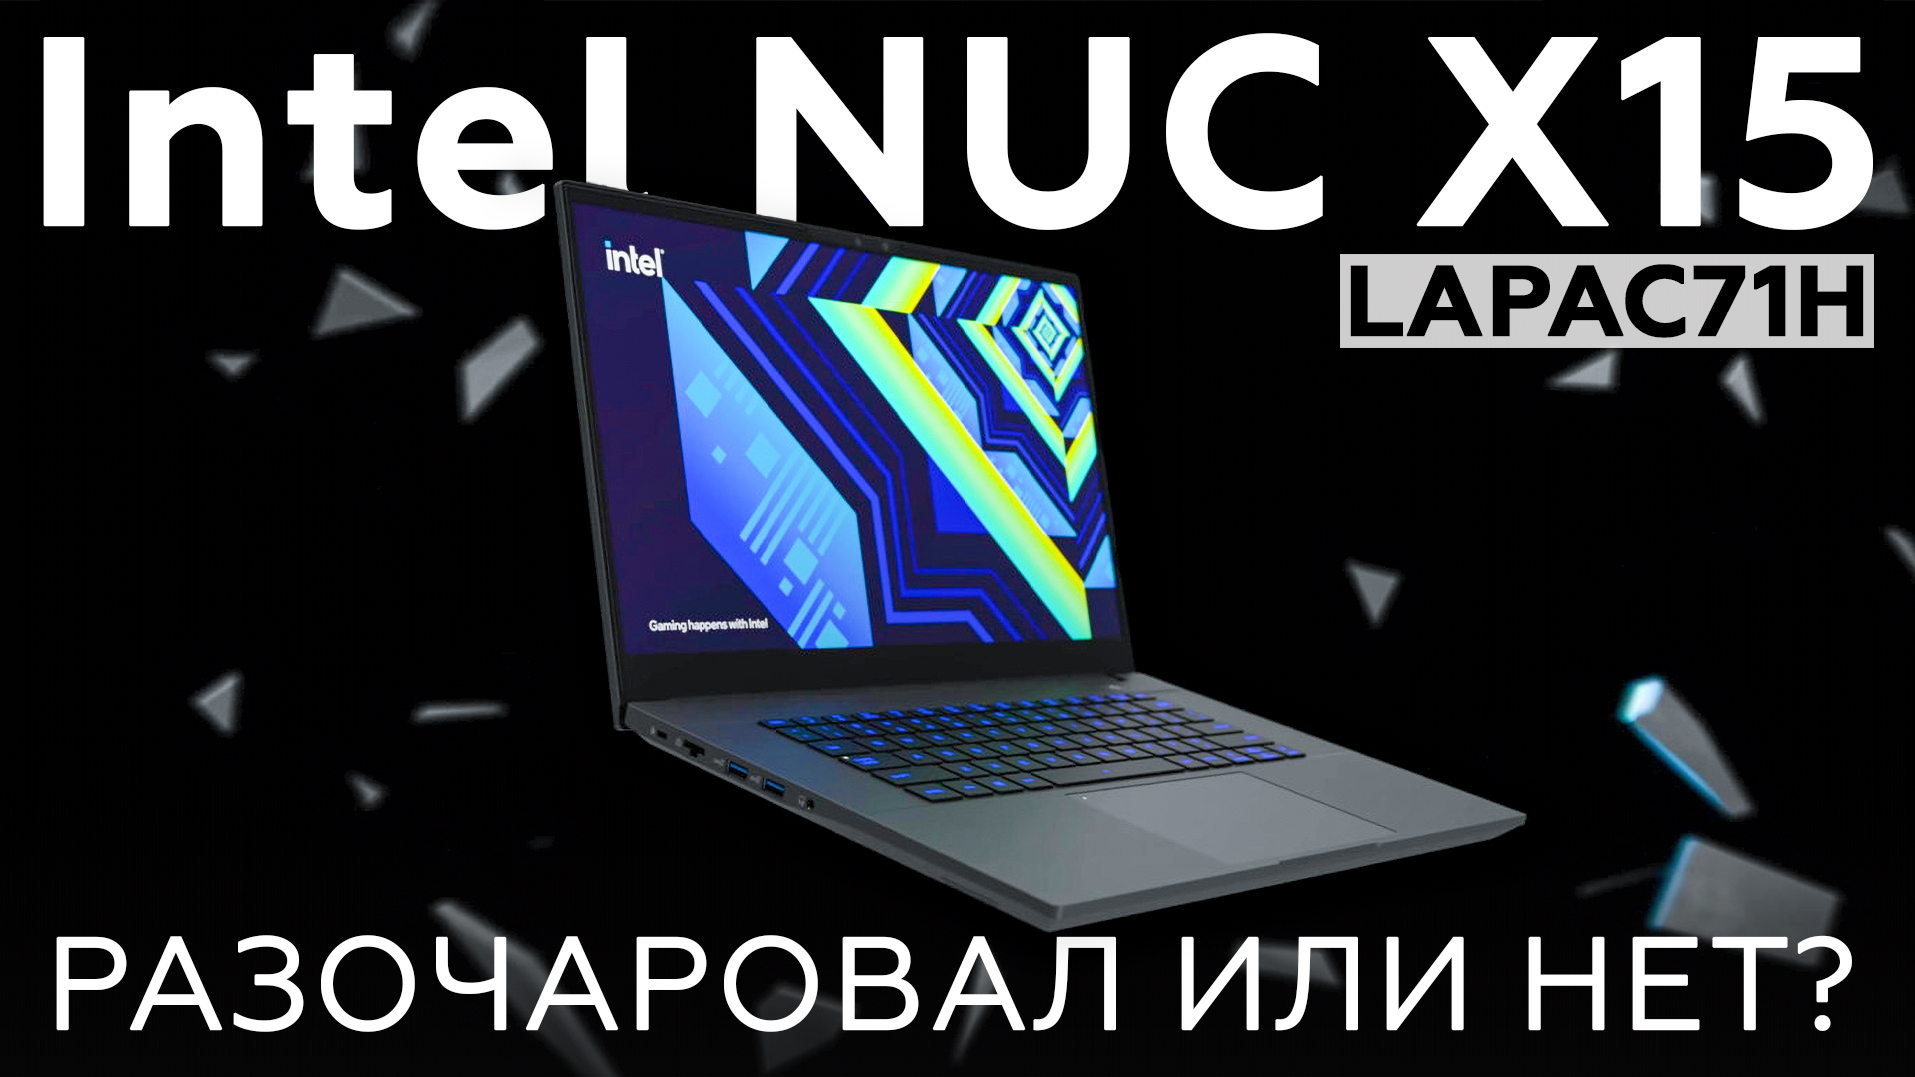 Обзор игрового ноутбука Intel NUC X15 (LAPAC71H)